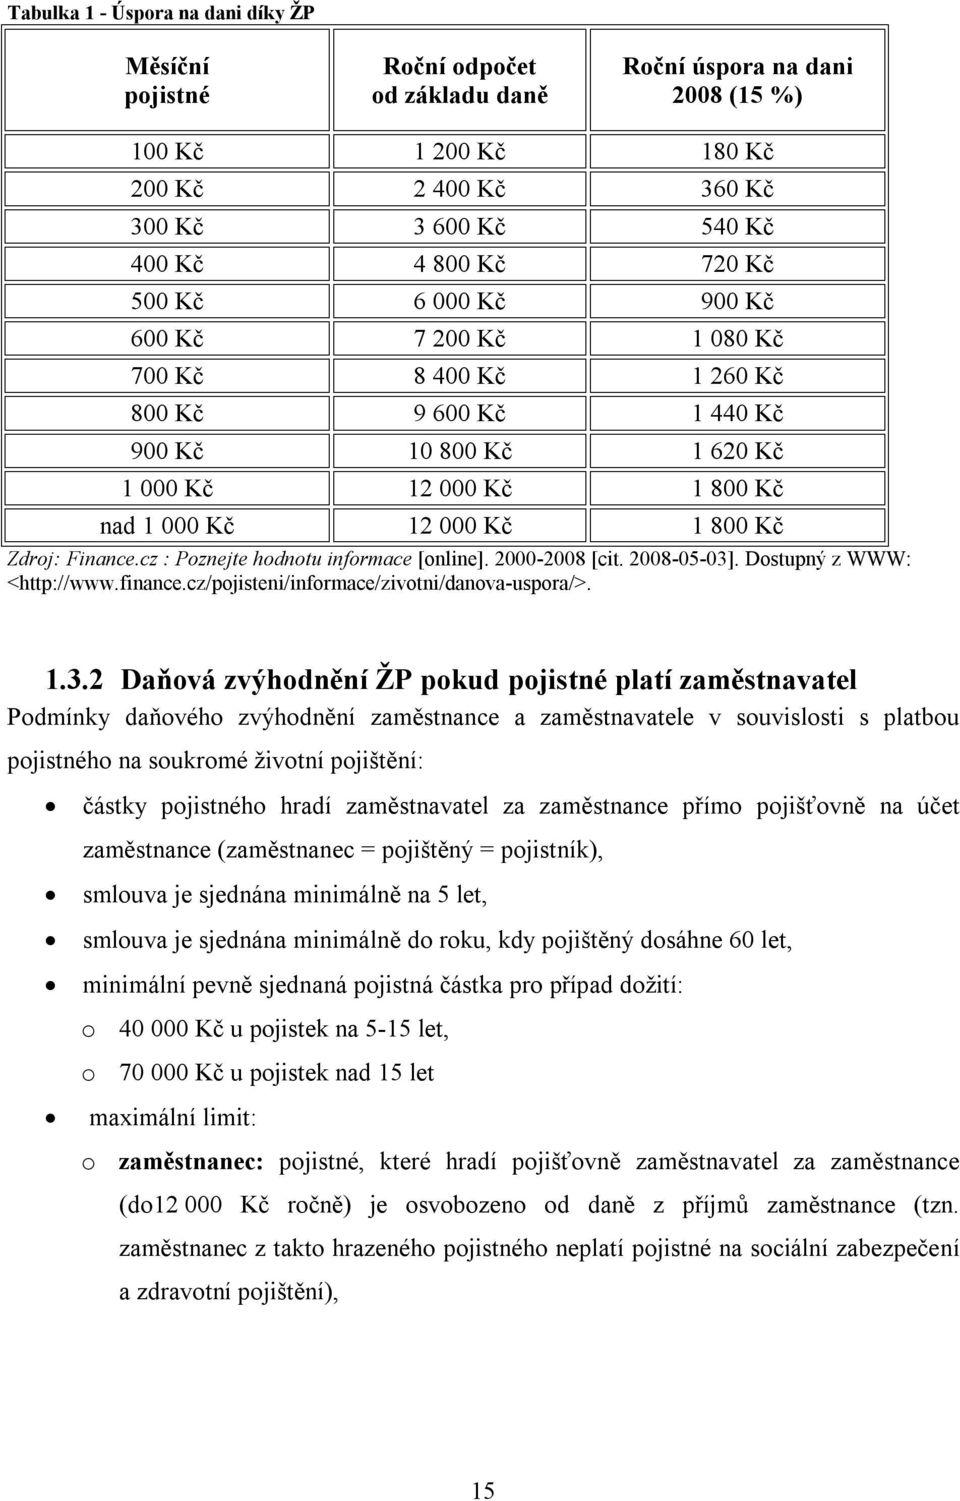 Finance.cz : Poznejte hodnotu informace [online]. 2000-2008 [cit. 2008-05-03]